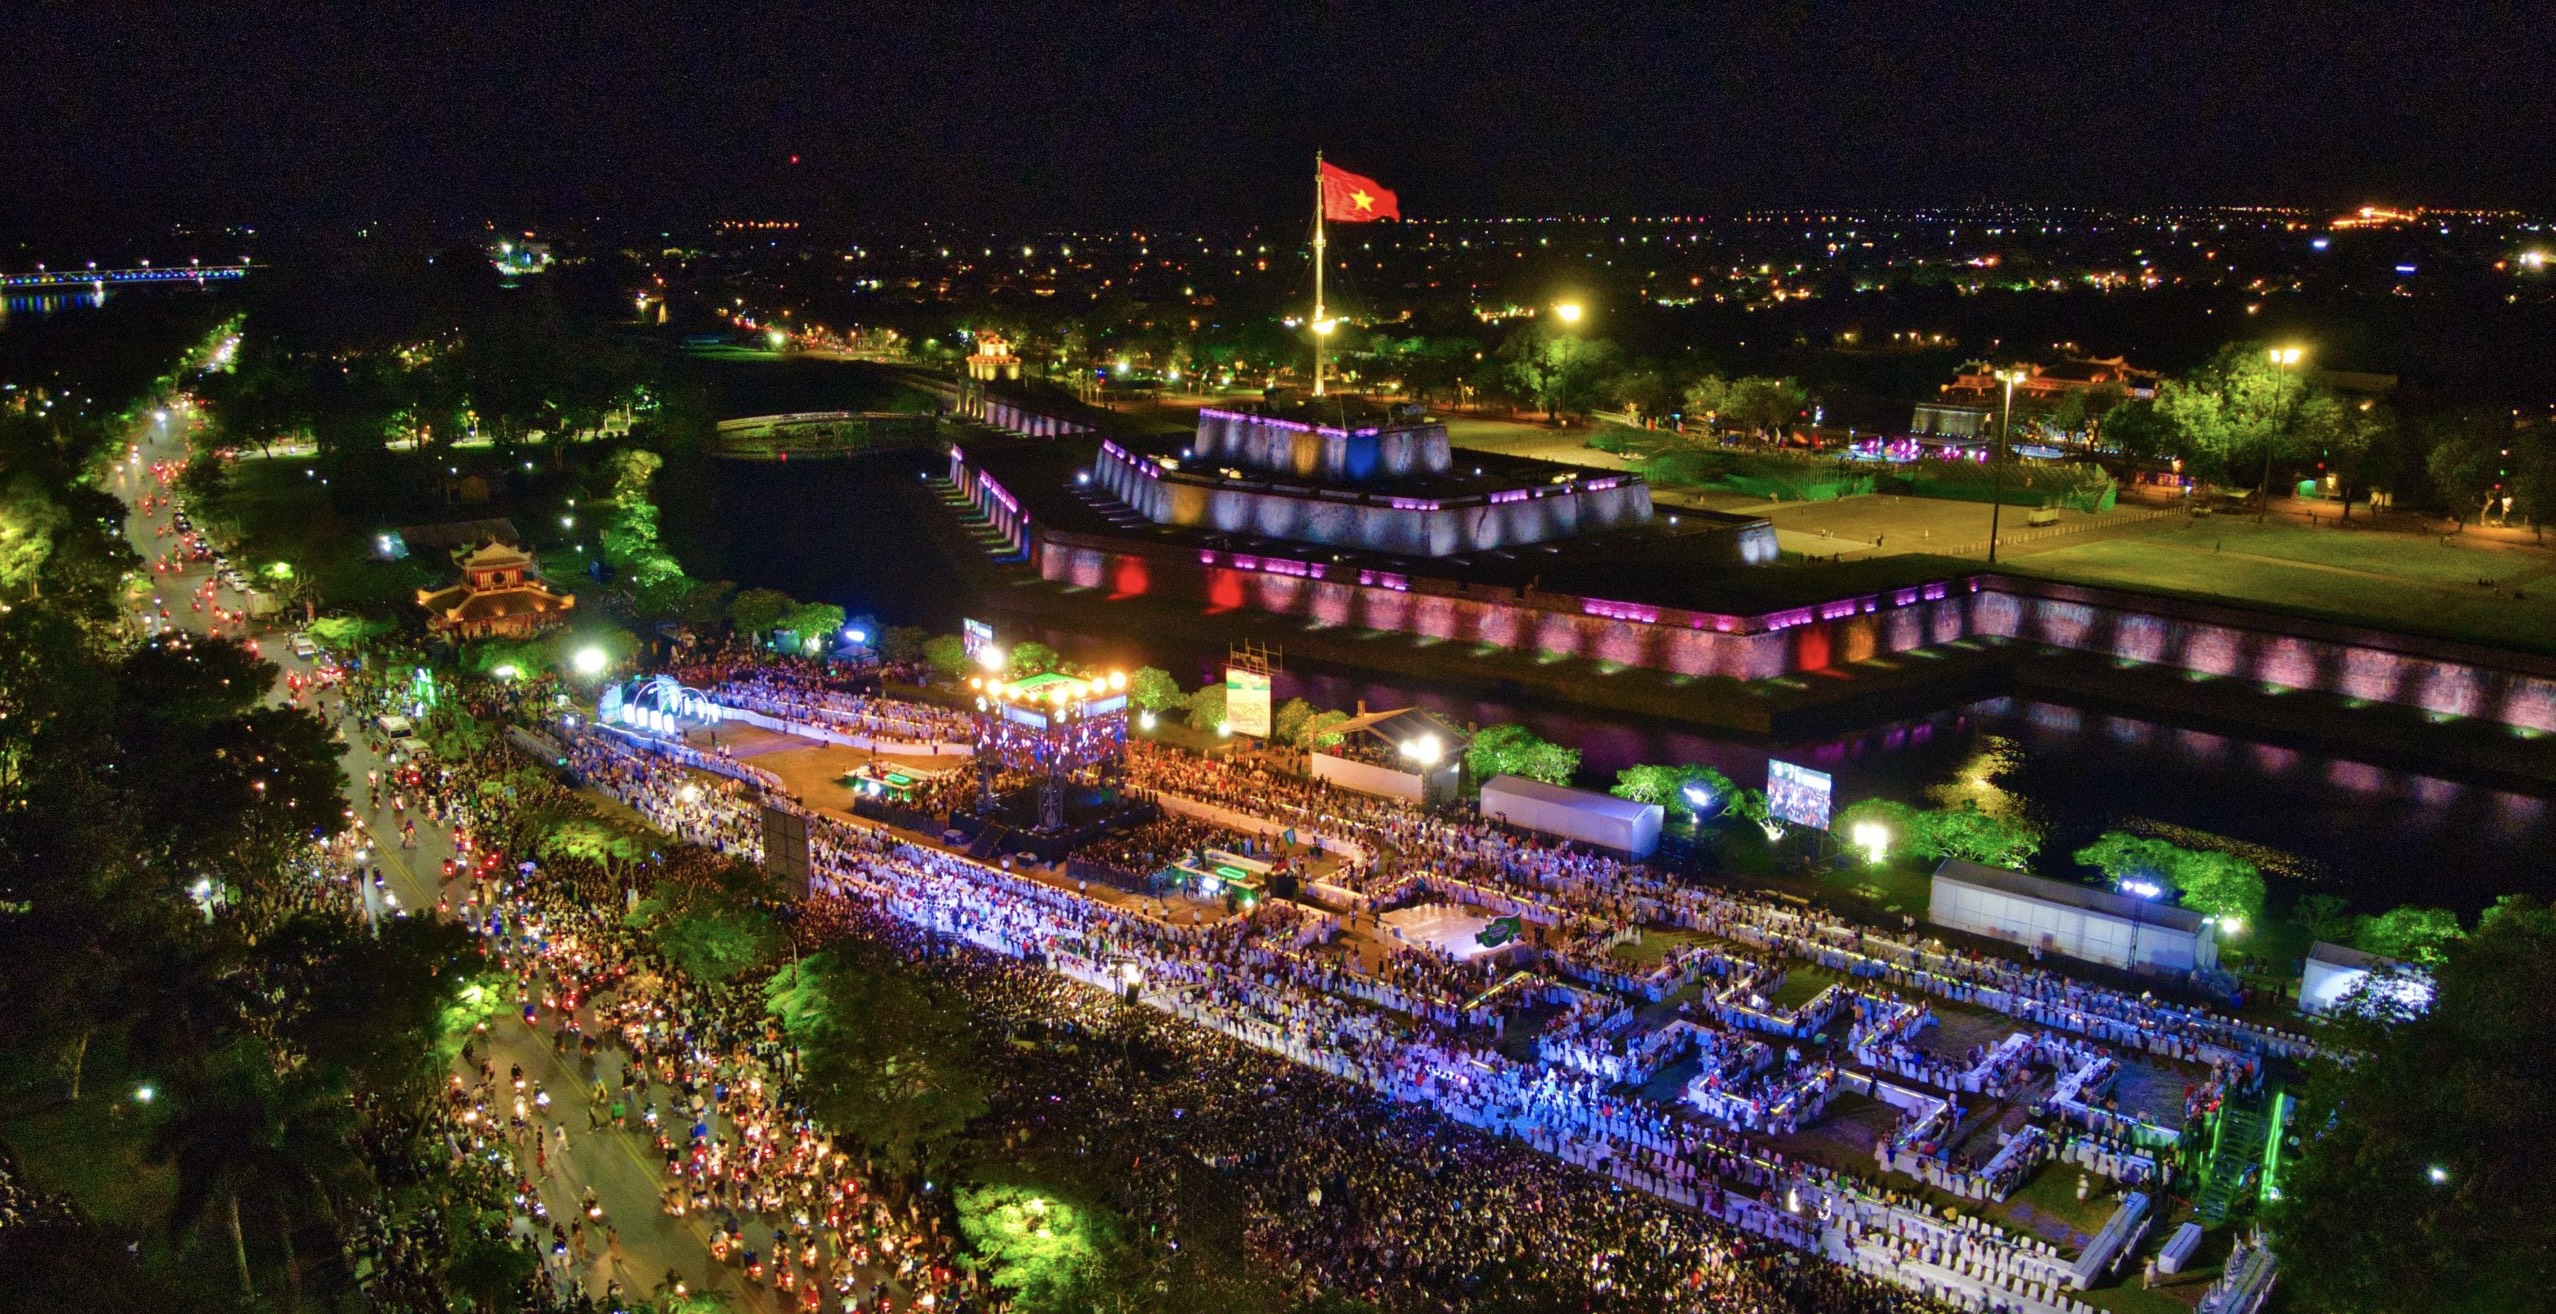 Lễ hội đường phố chủ đề “Sắc màu văn hóa” đã khai mạc tại khu vực ngã 6 phía trước Trung tâm Văn hóa - Điện ảnh, thành phố Huế.